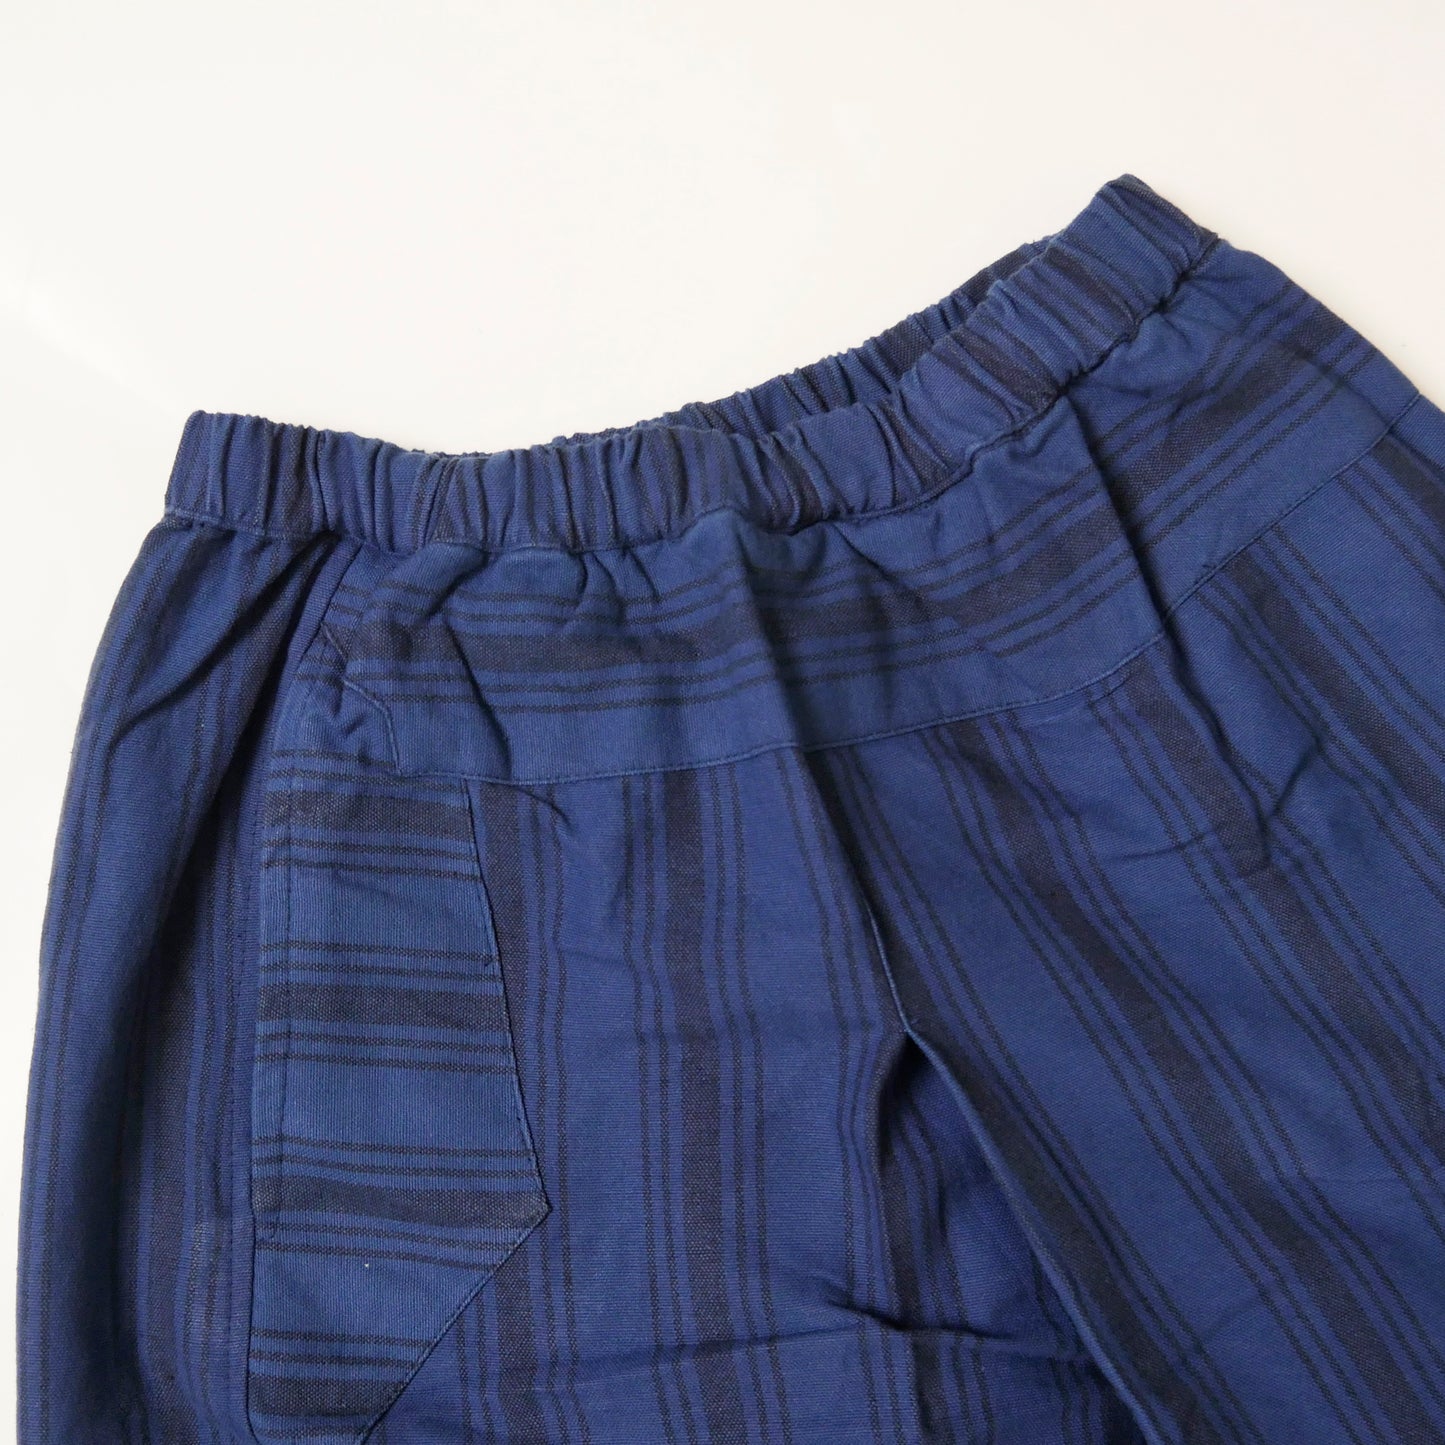 Хлопковые брюки в полоску индиго в стиле Wrap